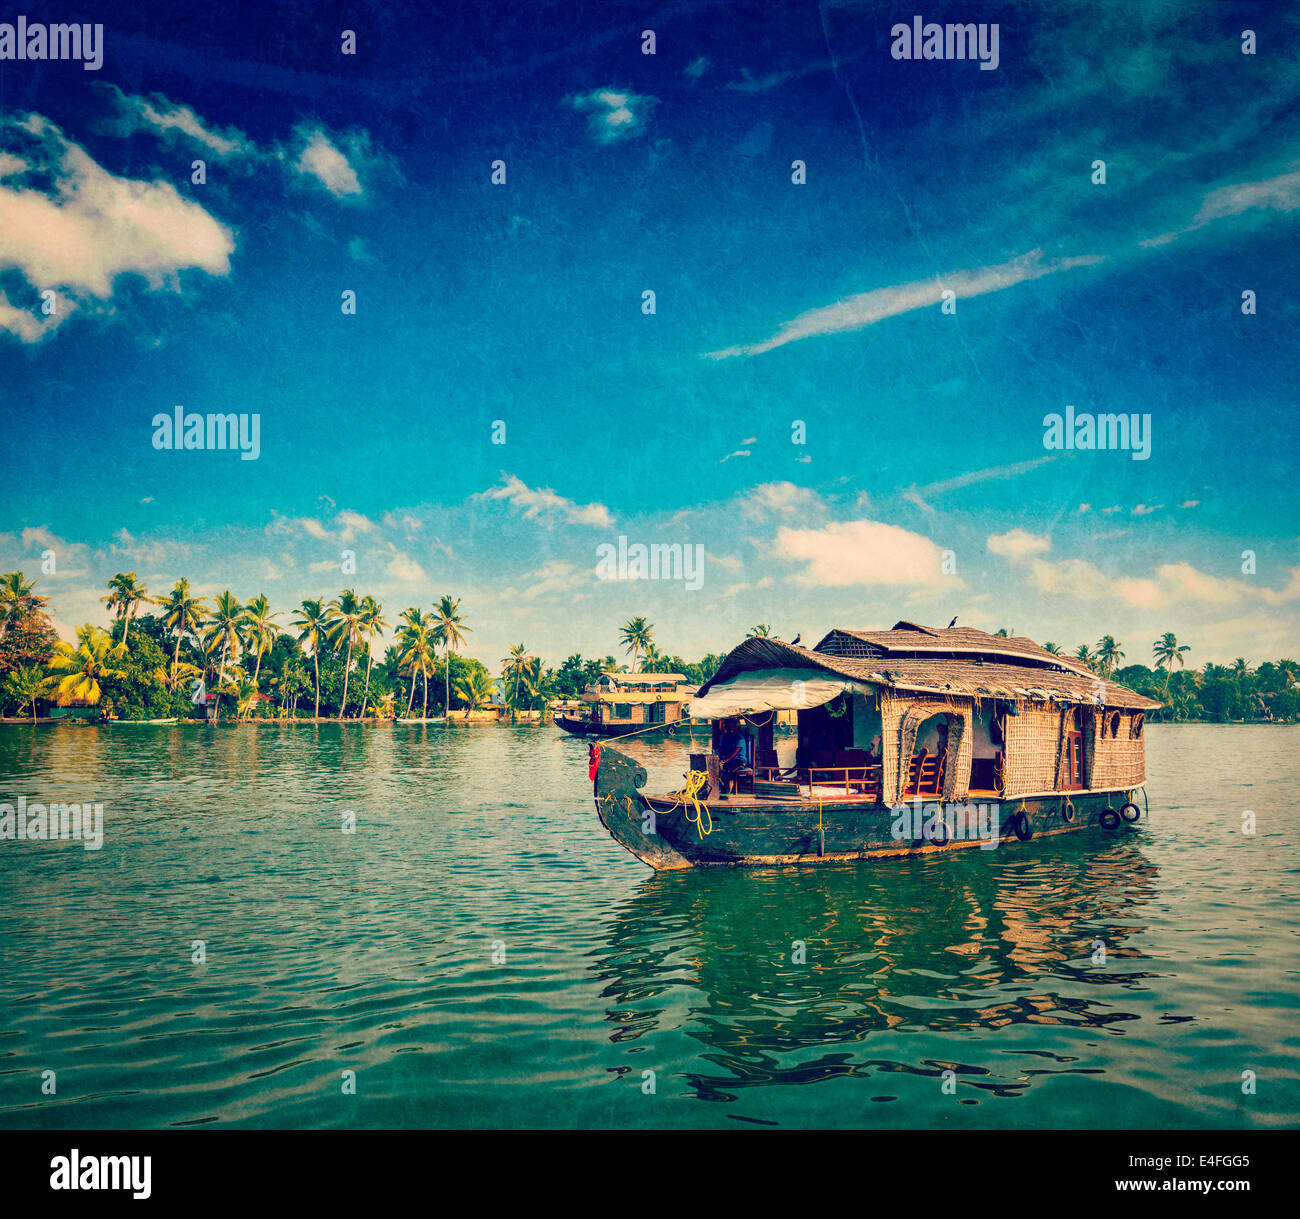 Vintage retrò hipster stile immagine di viaggio di viaggi turismo Kerala background - houseboat in Kerala backwaters con grunge Foto Stock